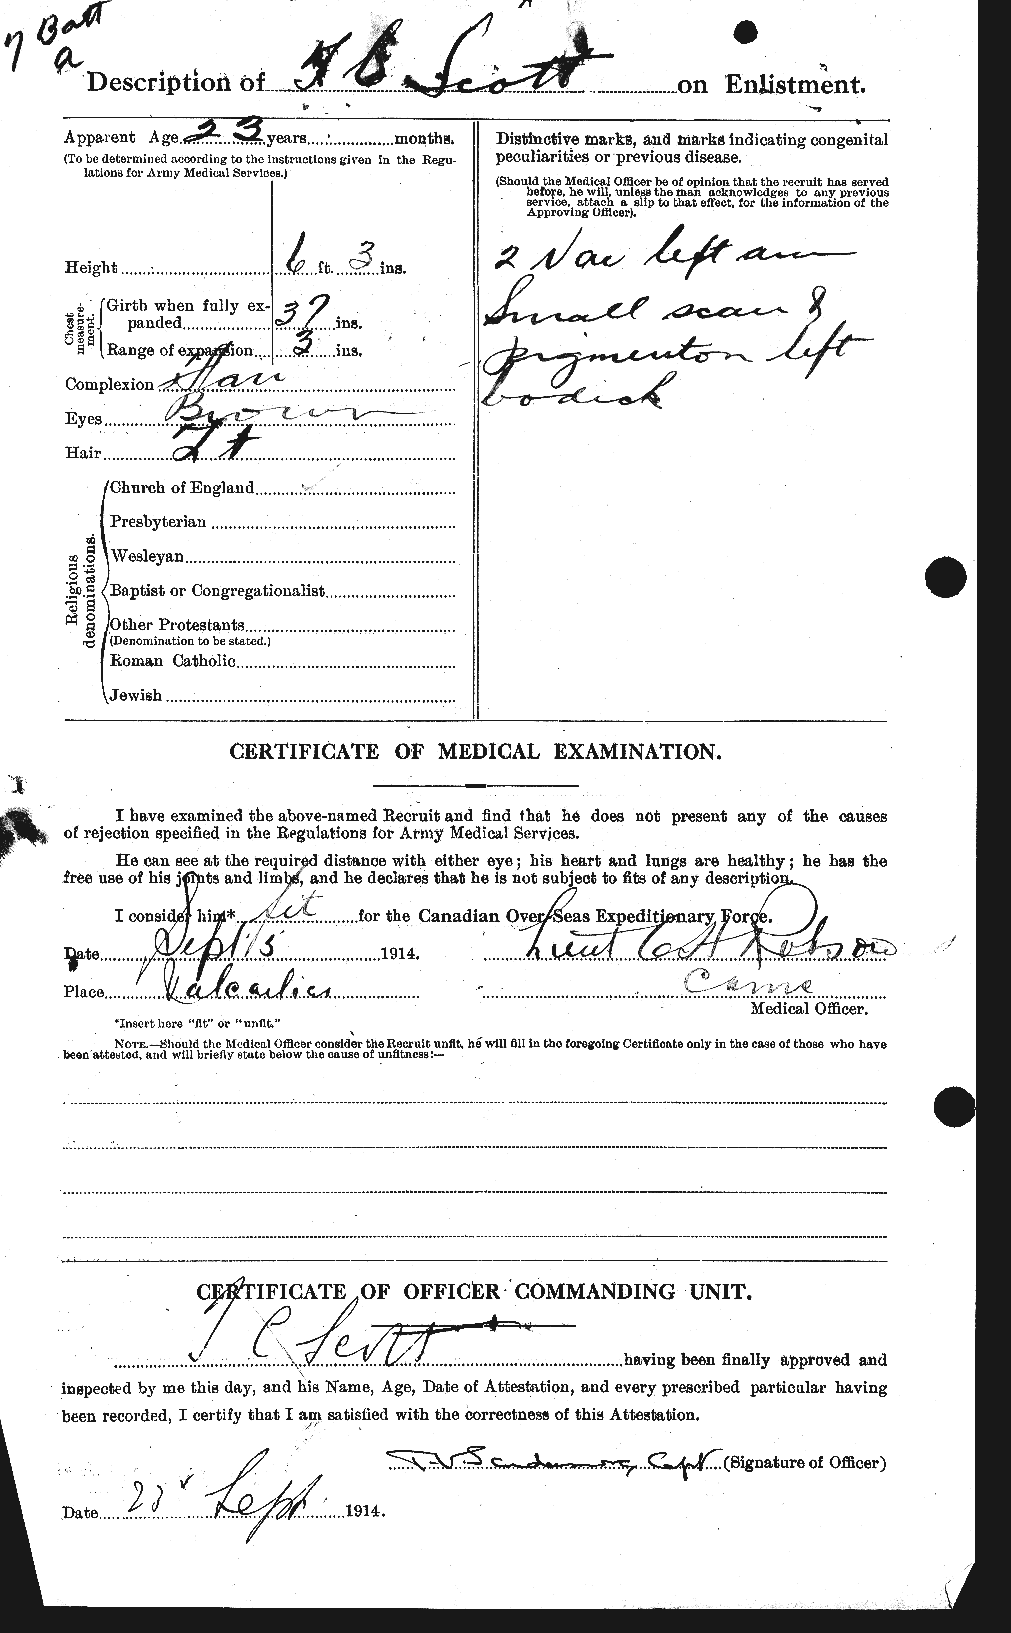 Dossiers du Personnel de la Première Guerre mondiale - CEC 088521b